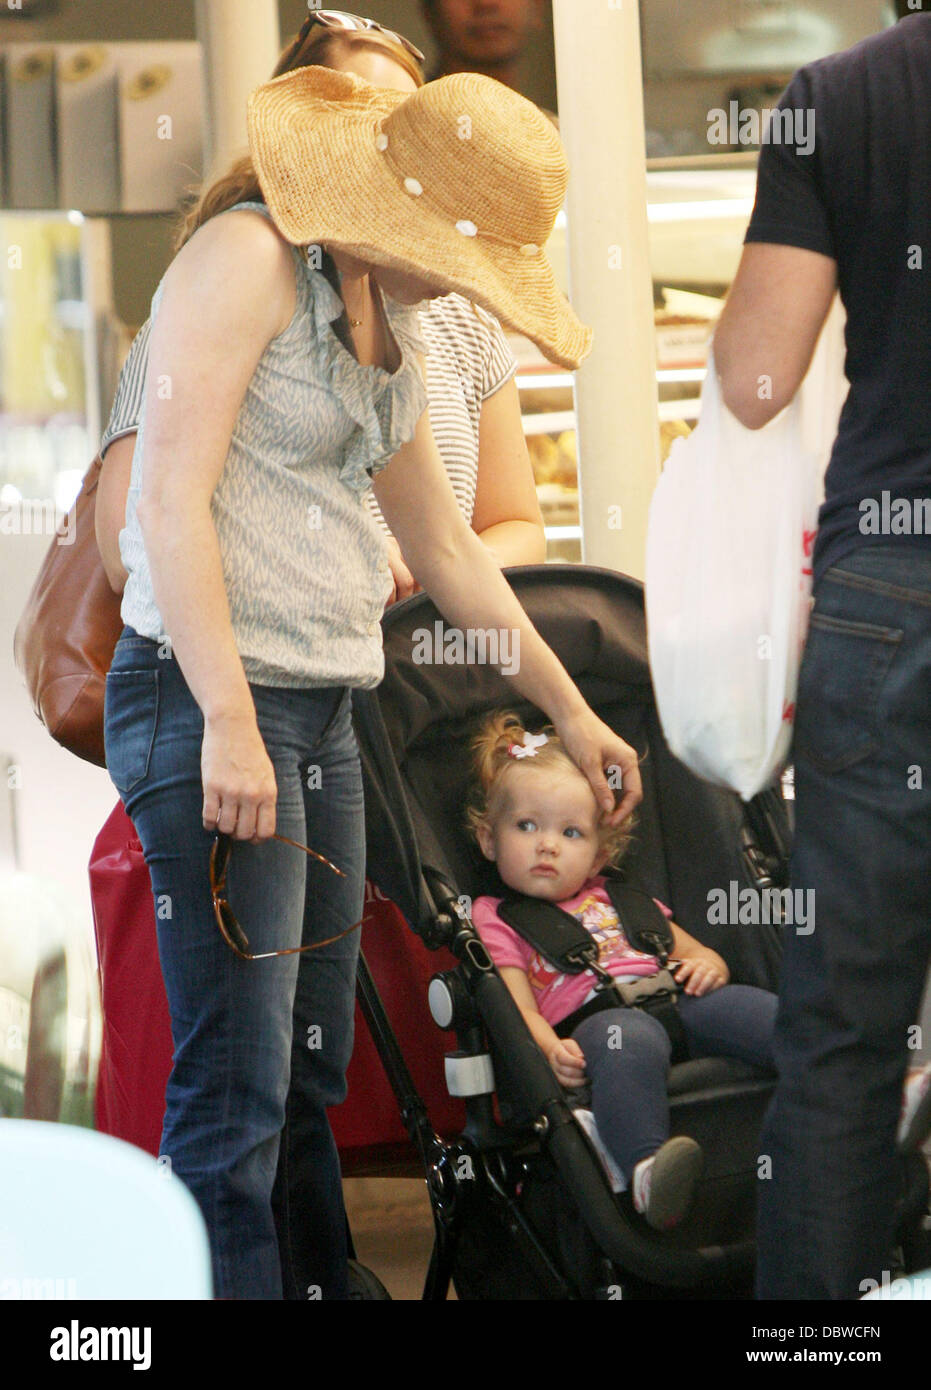 Amy Adams et son fiancé Darren Le Gallo passent la journée ensemble shopping à Hollywood Hollywood, Californie - 31.08.11 Banque D'Images